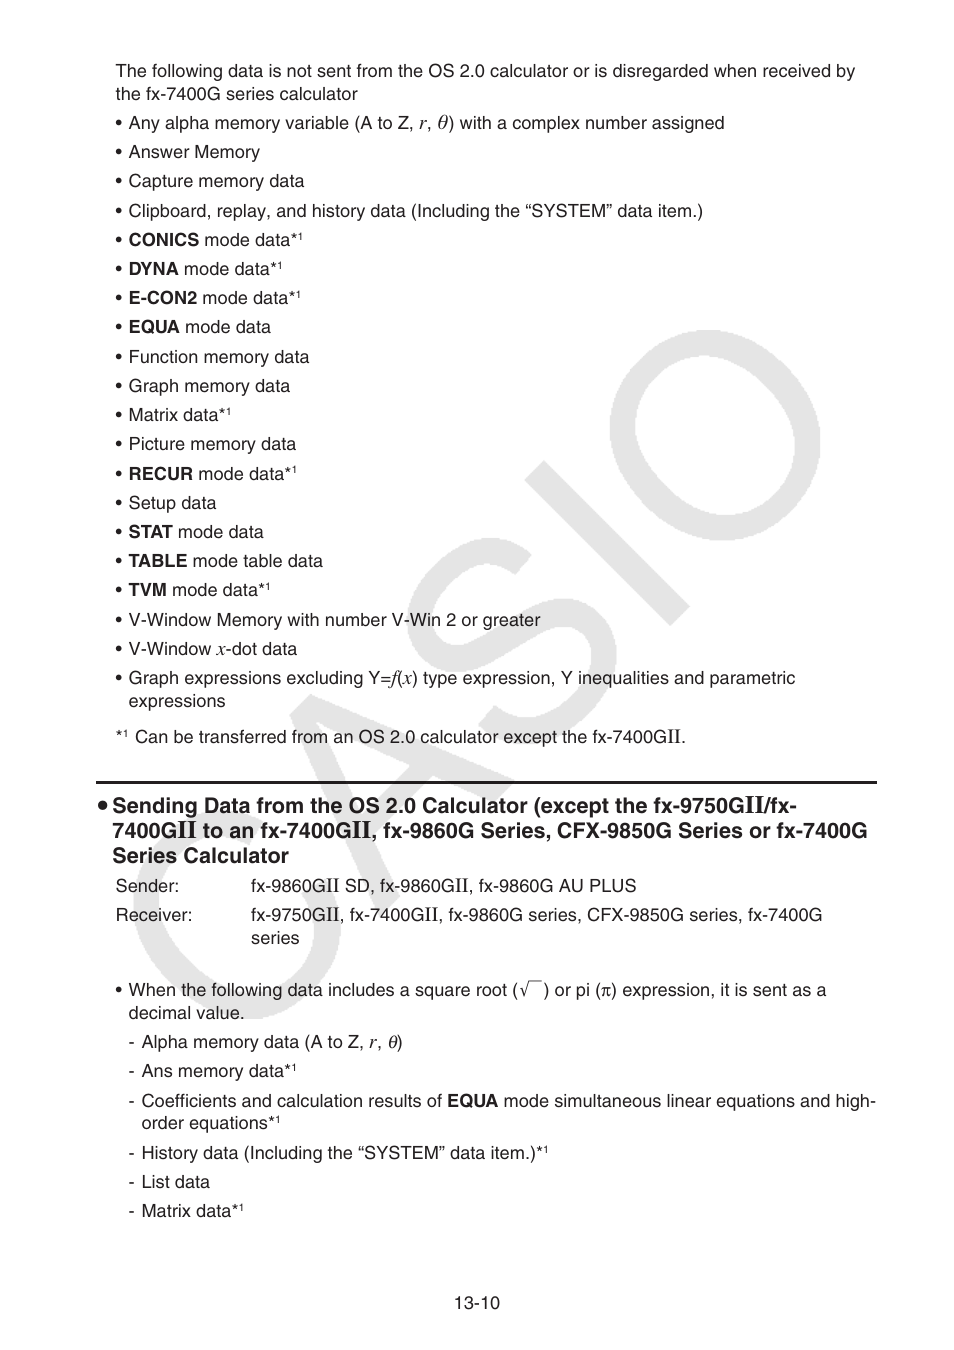 Casio FX-9750GII User Manual | Page 313 / 402 | Original mode | Also for: FX -9860GII, fx-9860G AU PLUS, fx-9860G AU, fx-9860GII SD, fx-9860G SD, FX-9860G,  FX-7400GII, E-CON2